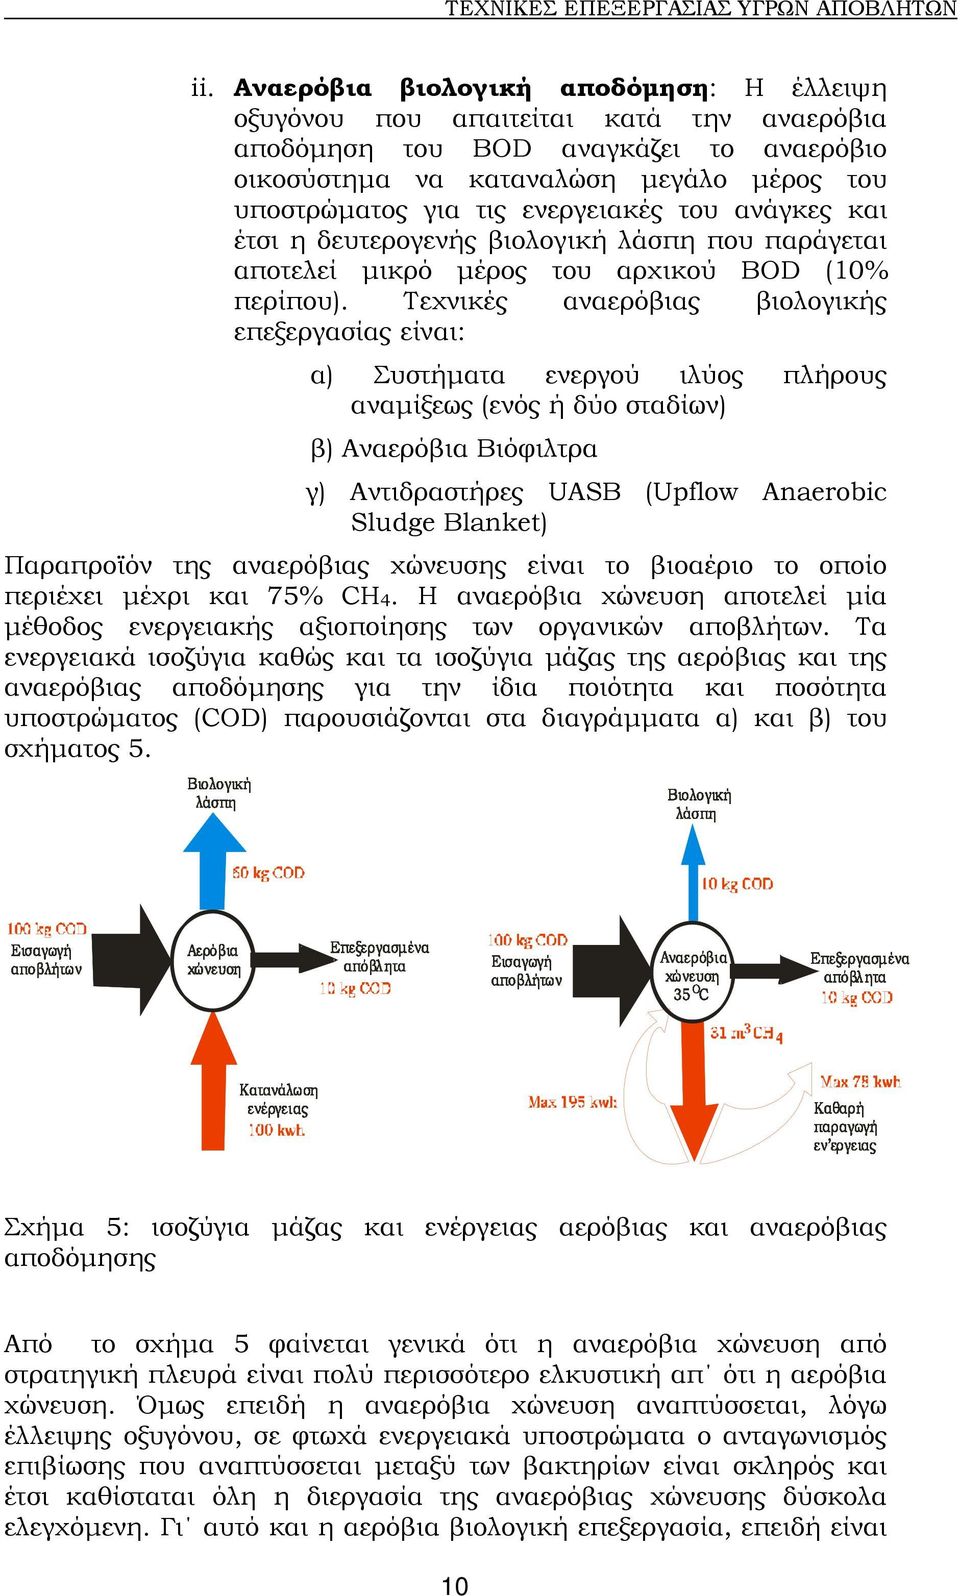 Τεχνικές αναερόβιας βιολογικής επεξεργασίας είναι: α) Συστήµατα ενεργού ιλύος πλήρους αναµίξεως (ενός ή δύο σταδίων) β) Αναερόβια Βιόφιλτρα γ) Αντιδραστήρες UASB (Upflow Anaerobic Sludge Blanket)